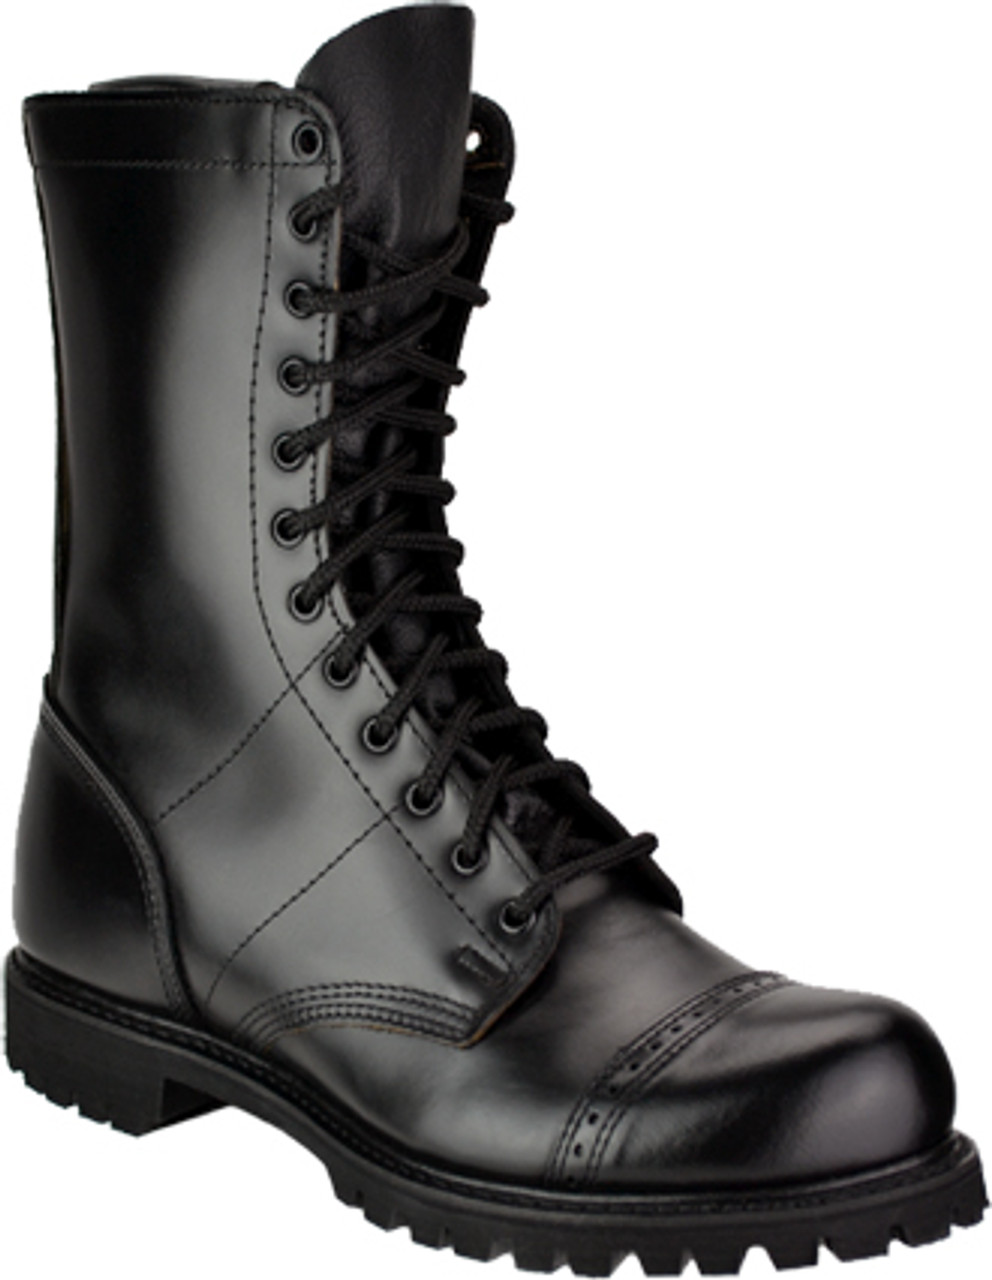 Corcoran Combat Boots Side Zipper 10 